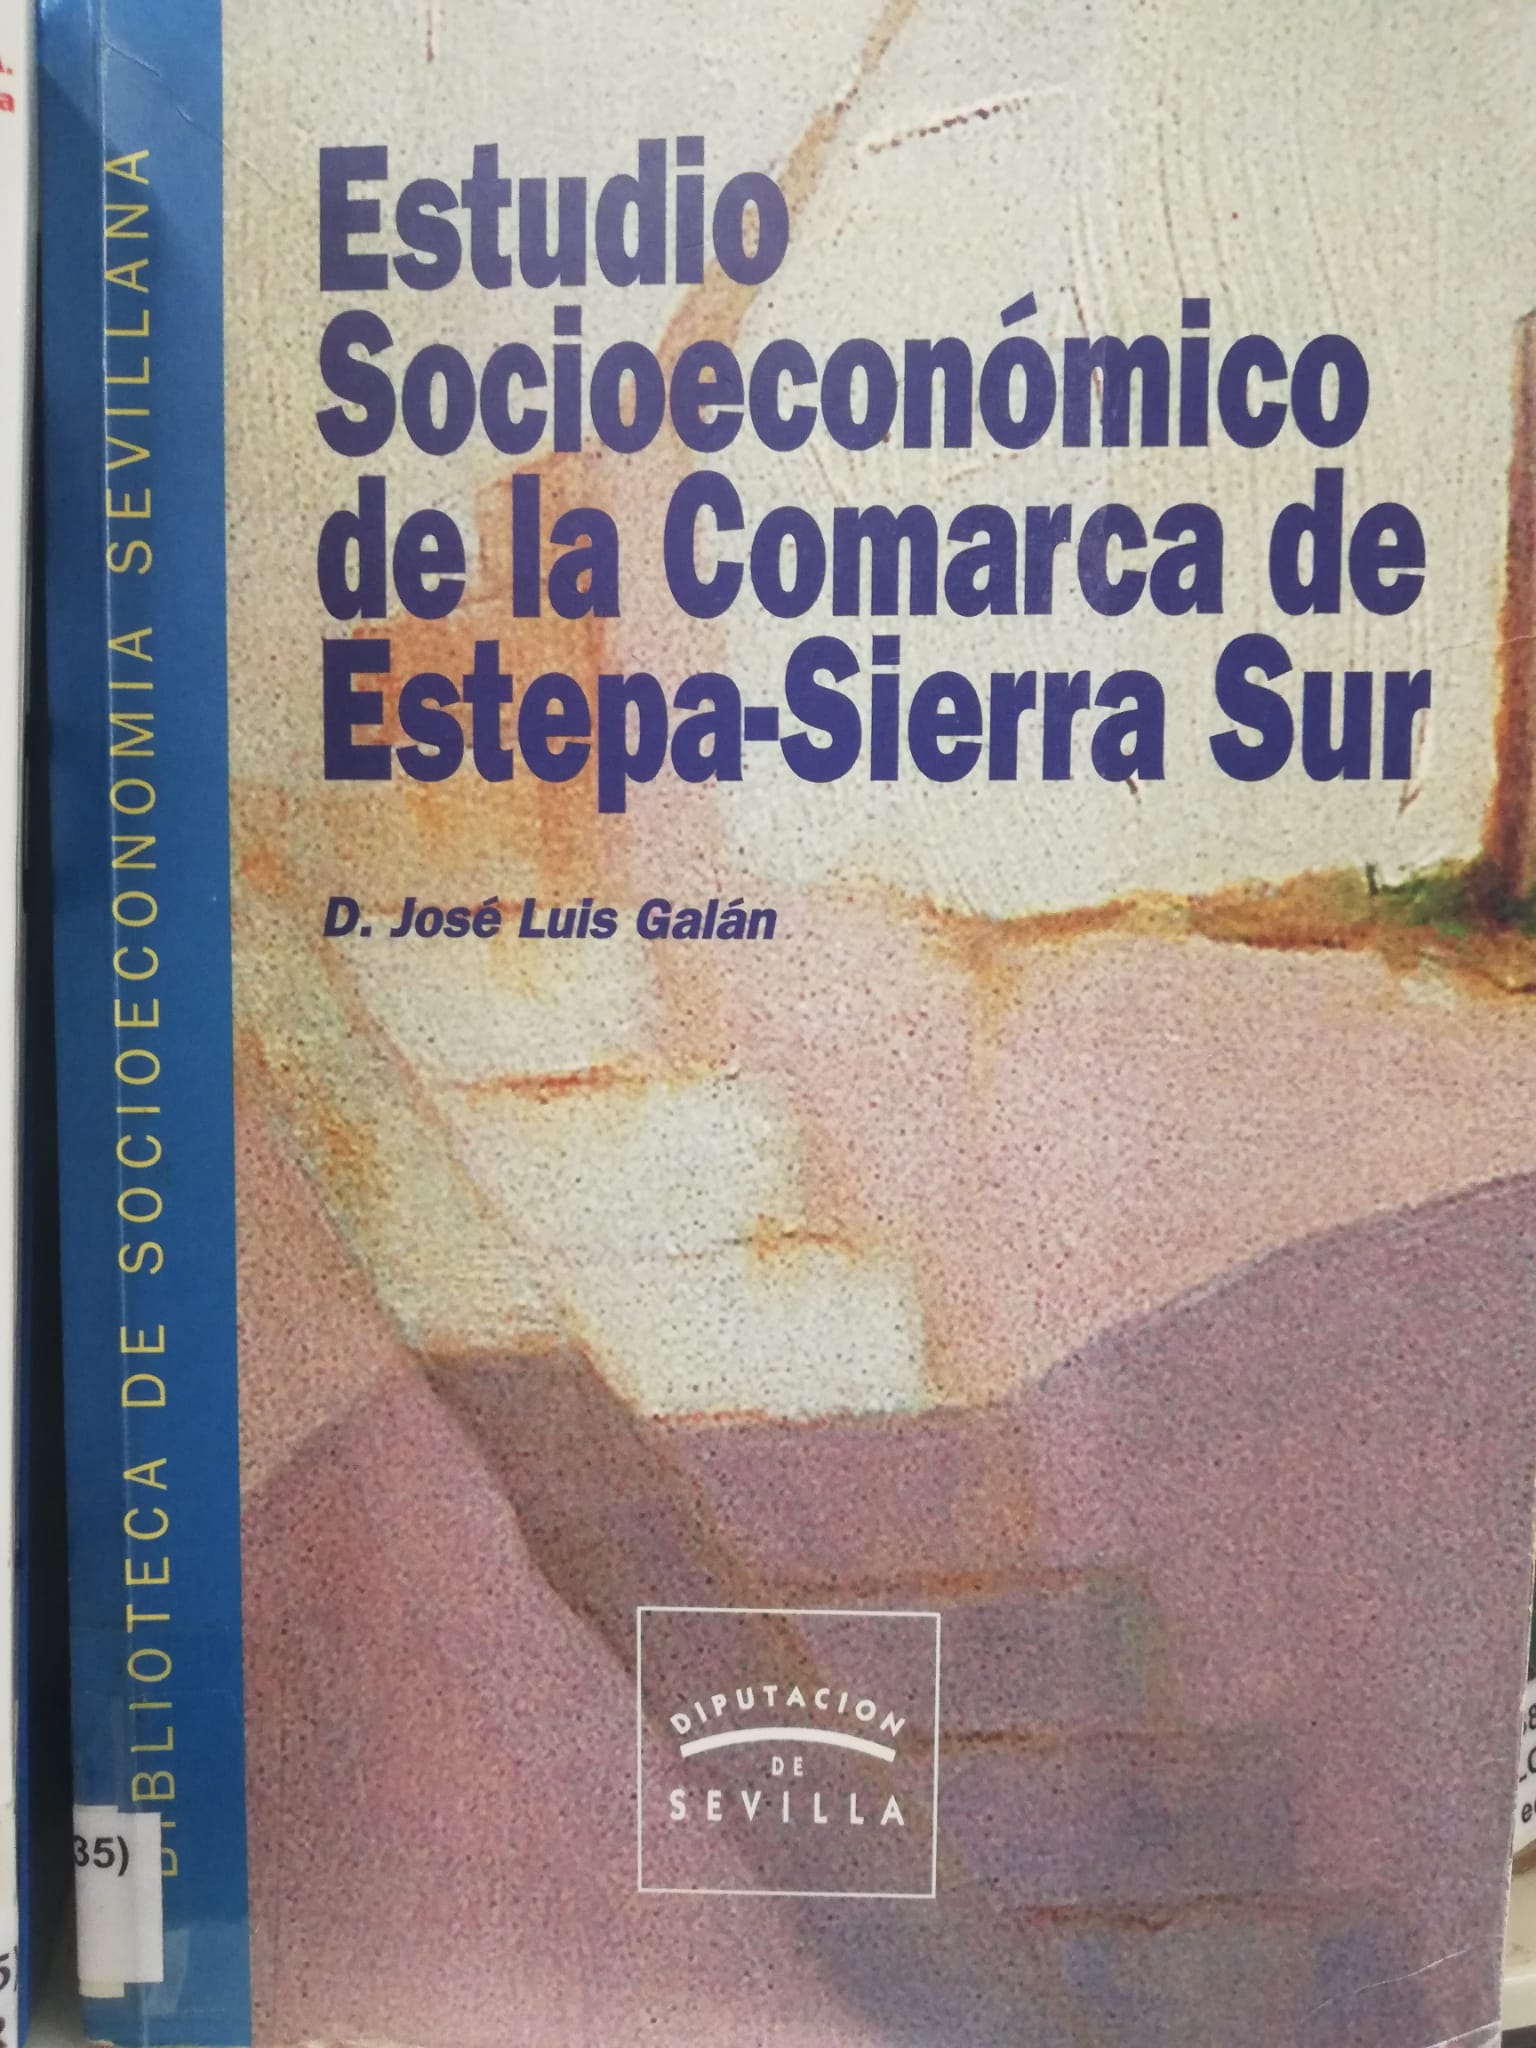 Imagen de portada del libro Estudio socioecomómico de la comarca de Estepa-Sierra Sur